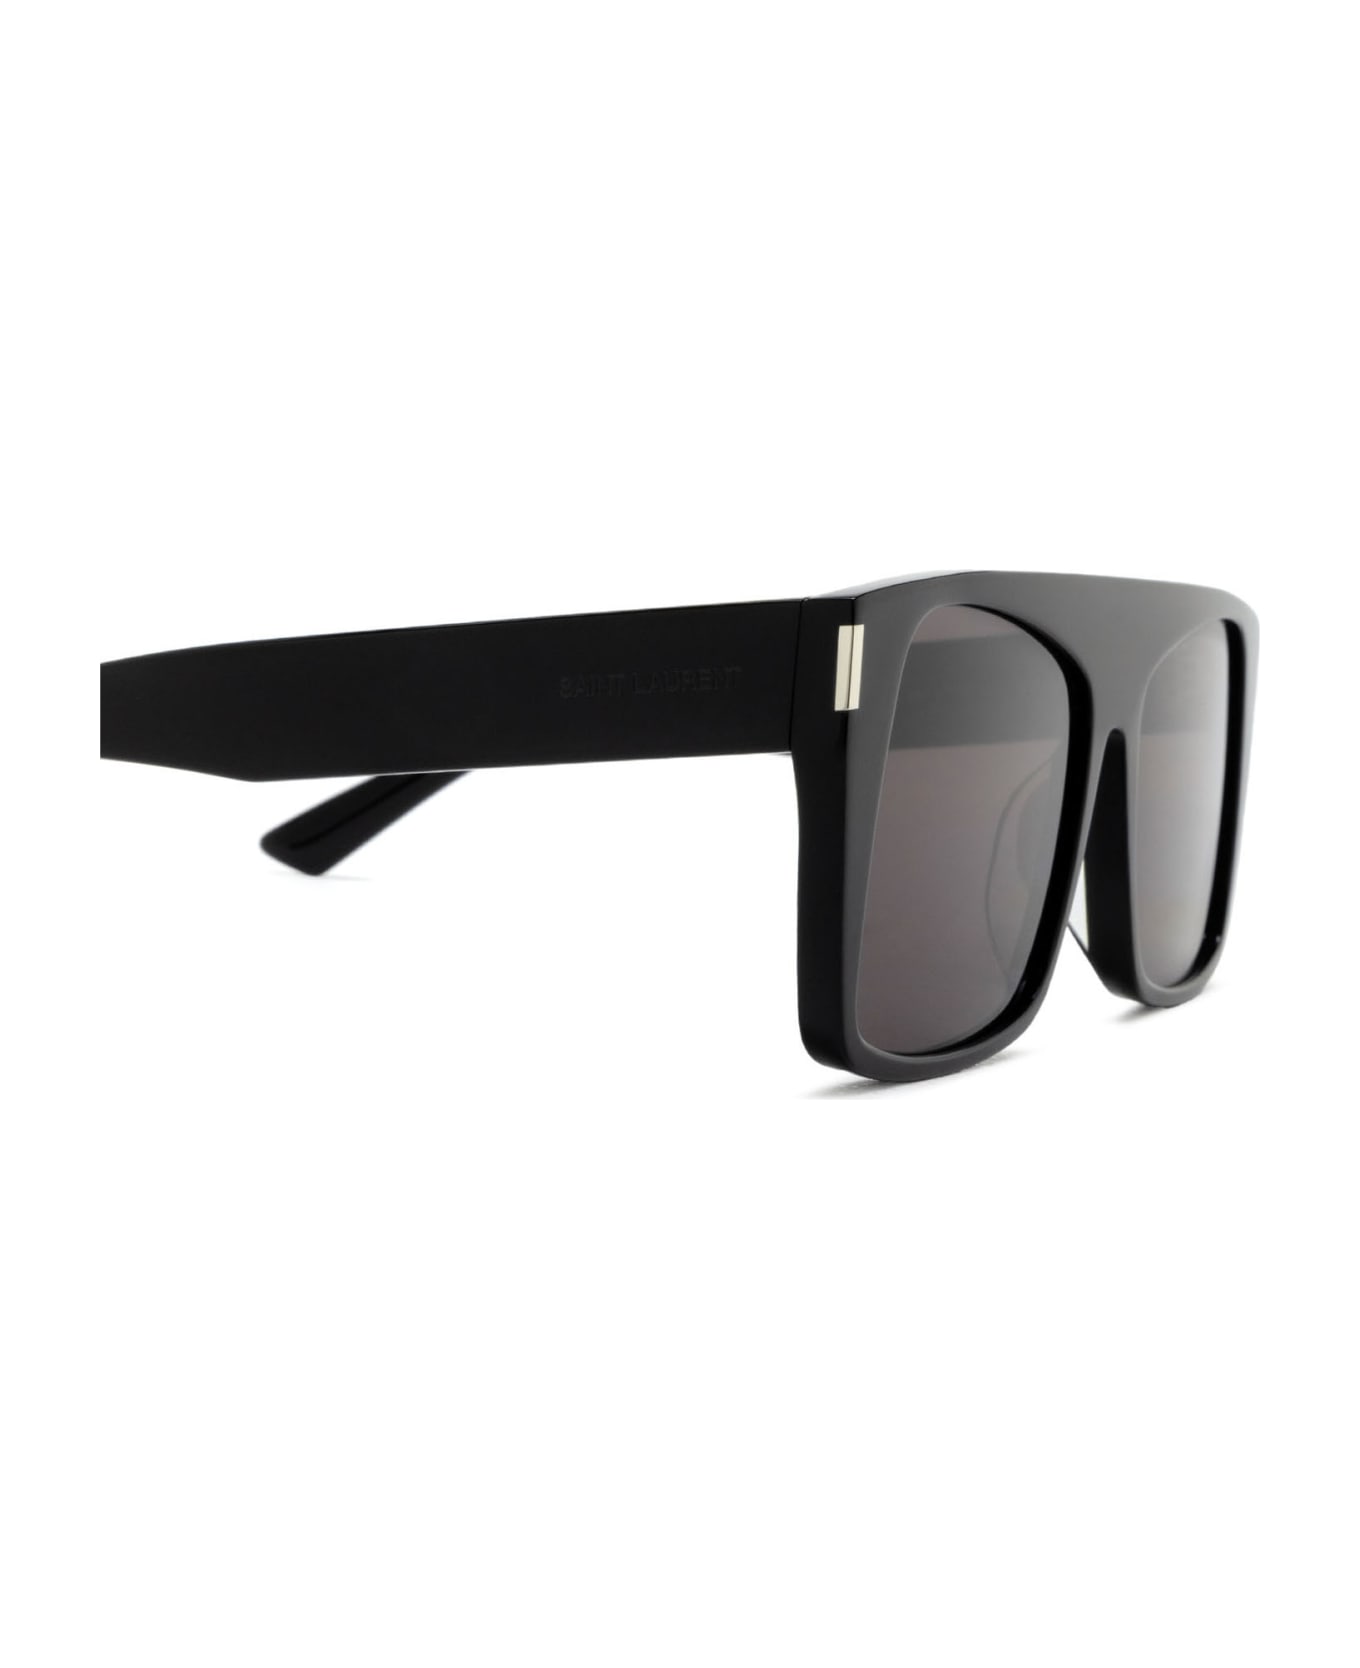 Saint Laurent Eyewear Sl 651 Black Sunglasses - Black サングラス